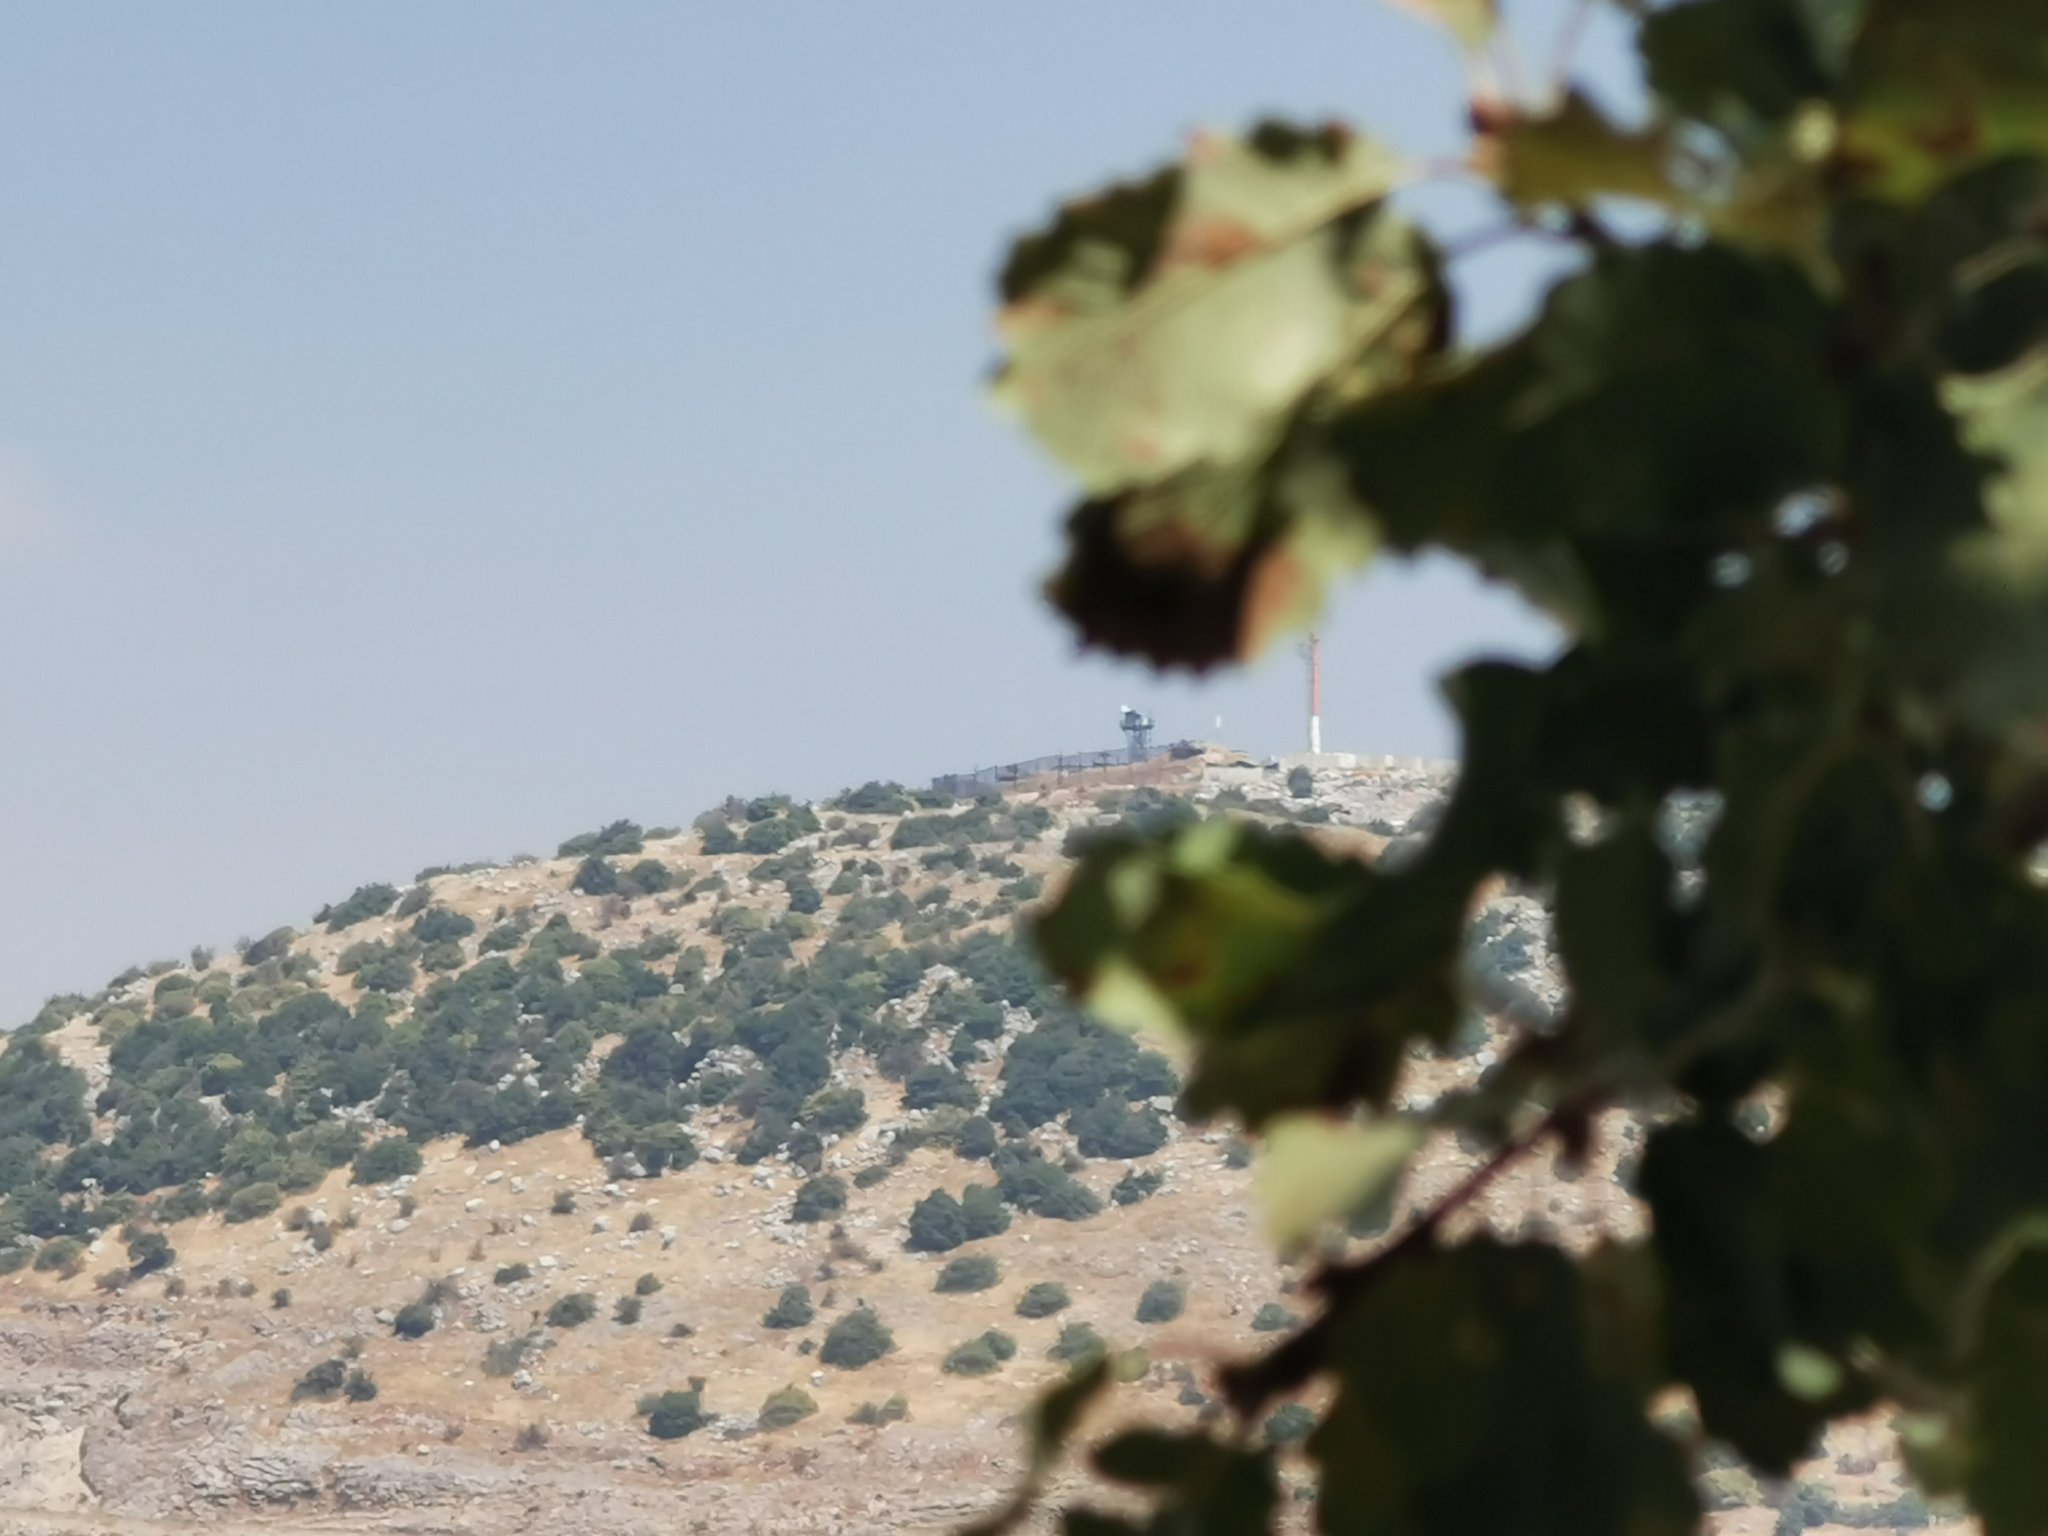 قوات الاحتلال الاسرائيلي سرقت قطيع ماعز يعود لراعي لبناني أثناء وجودها قرب خط الإنسحاب في مرتفعات كفرشوبا!